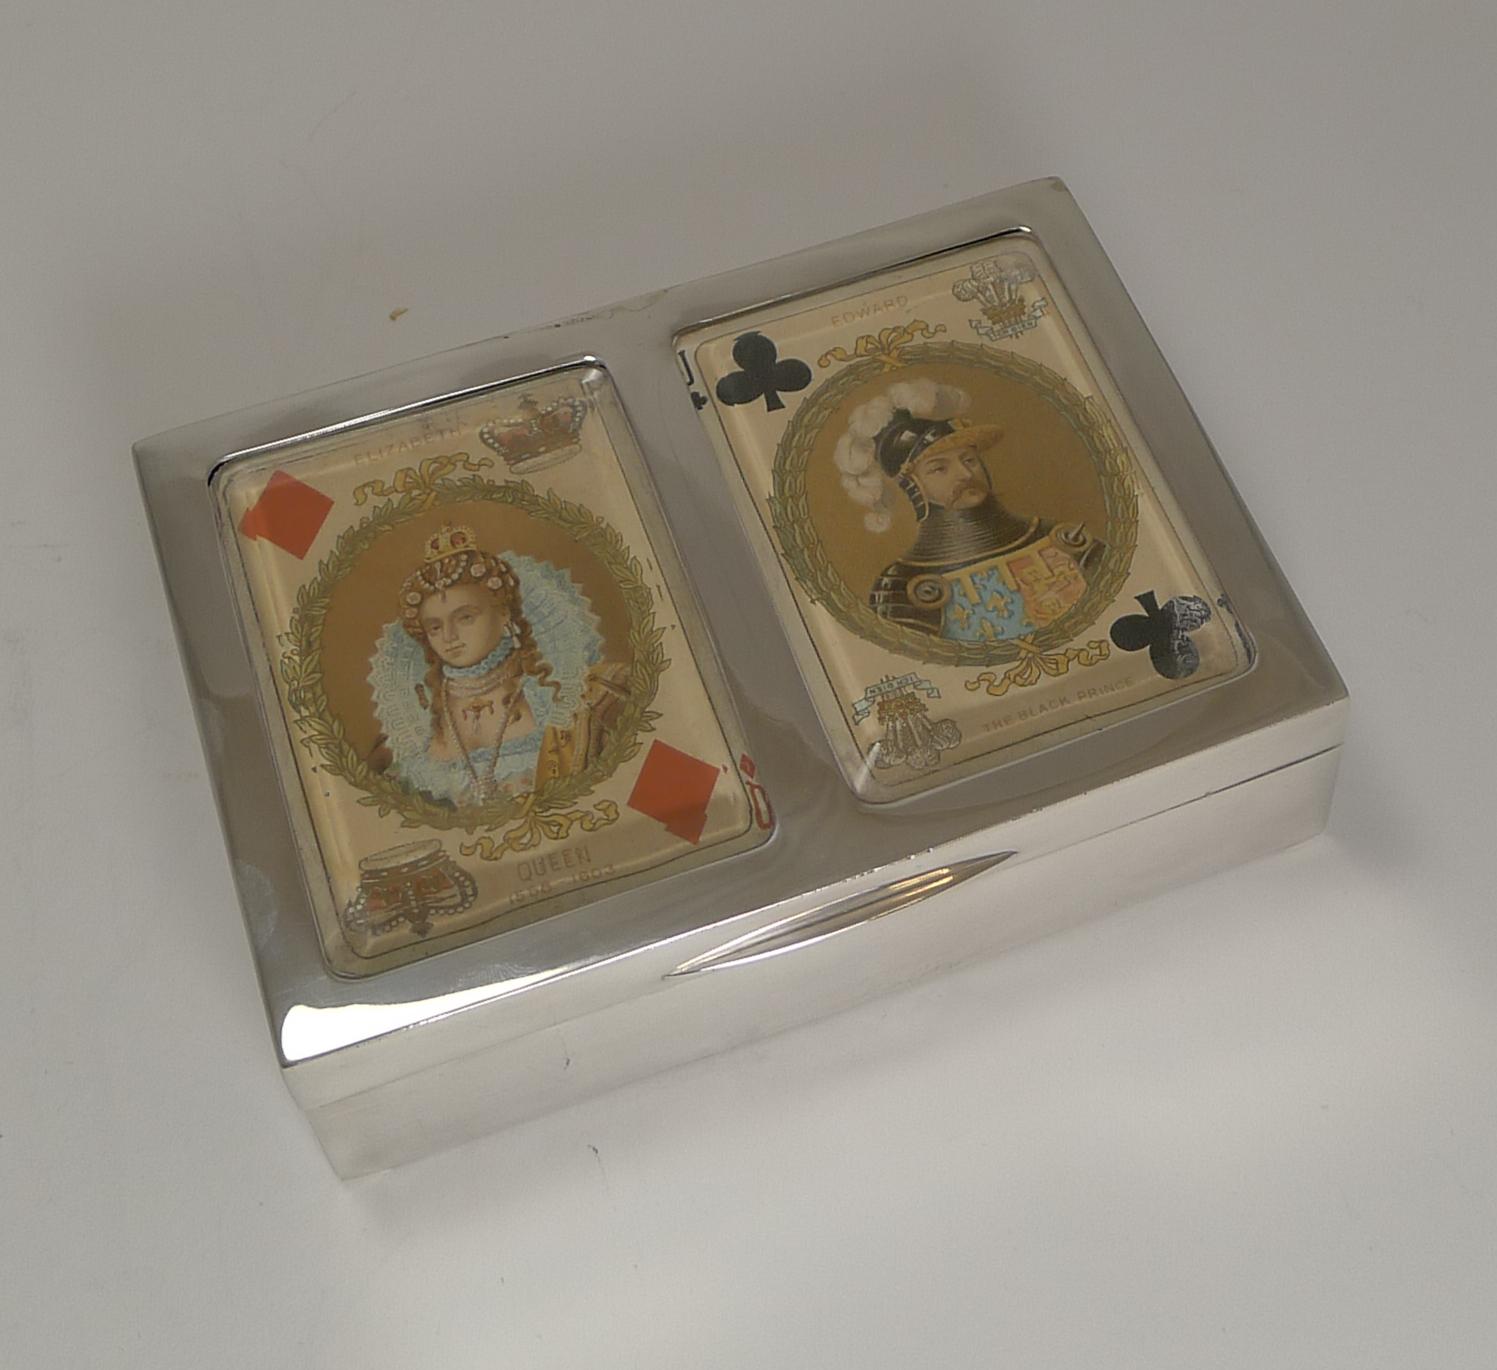 Superbe boîte à cartes à jouer de la fin de l'époque victorienne en argent sterling anglais entièrement poinçonné à Birmingham en 1899. La marque du célèbre orfèvre anglais Levi's et Salaman est également présente.

La boîte conserve les deux